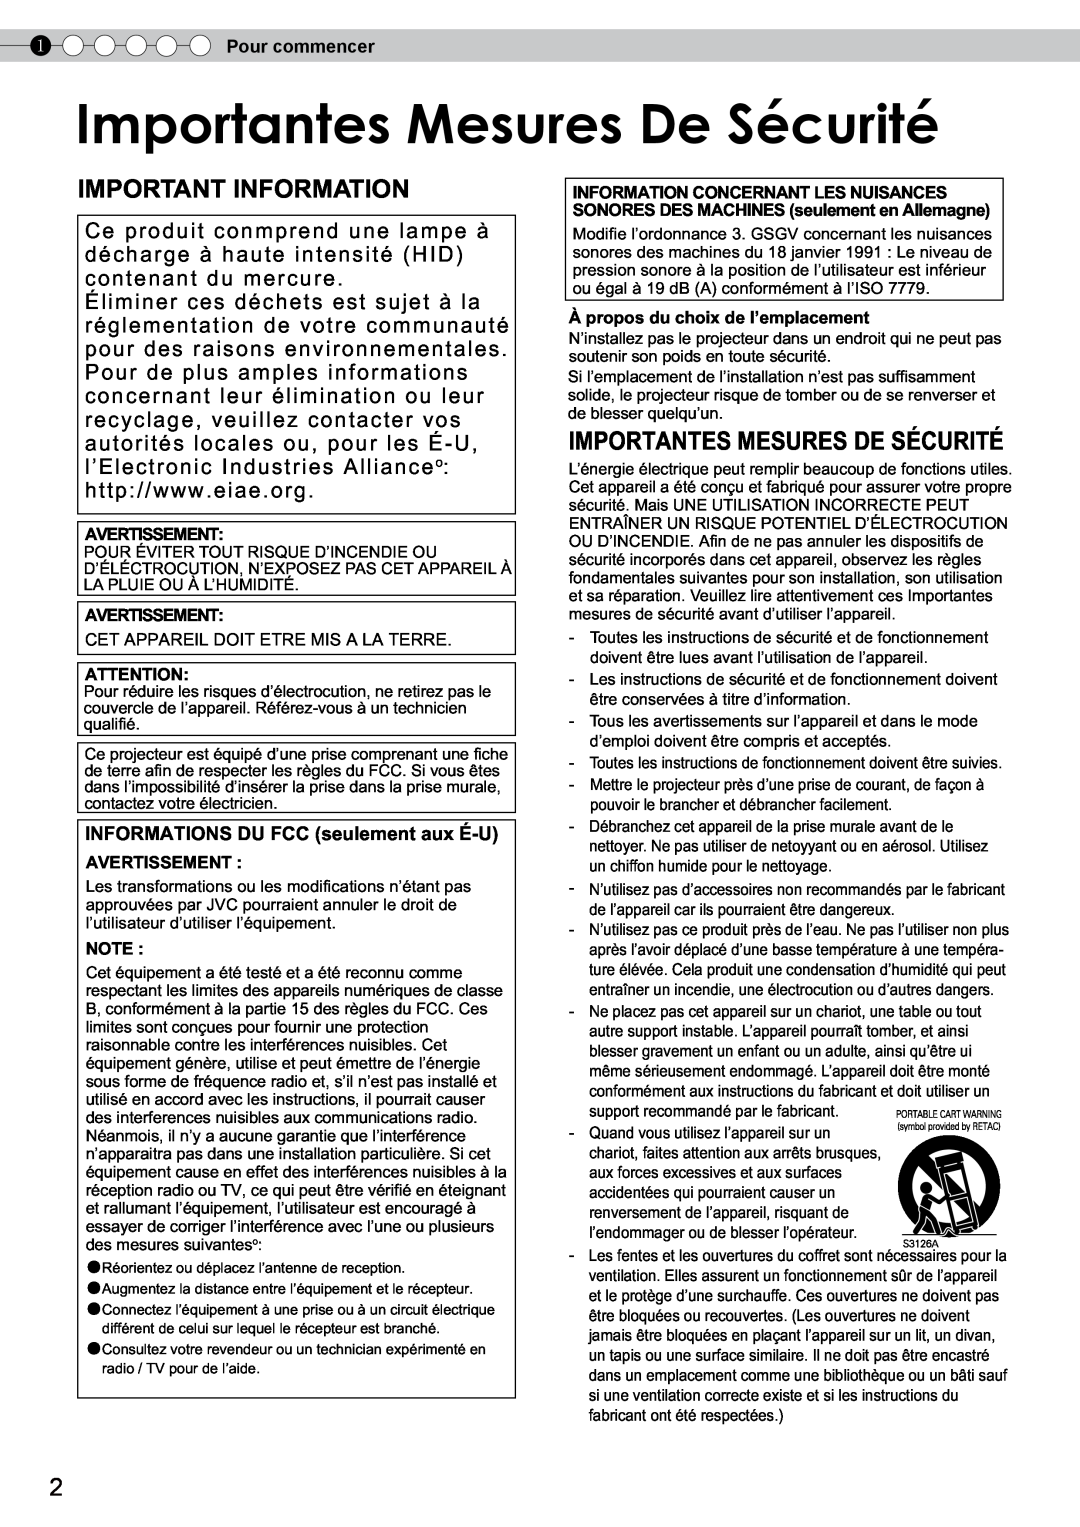 JVC DLA-RS10 manual Importantesortantes MesuresMesuresDeDeSécuritéSécurité, Importantes Mesures De Sécurité 